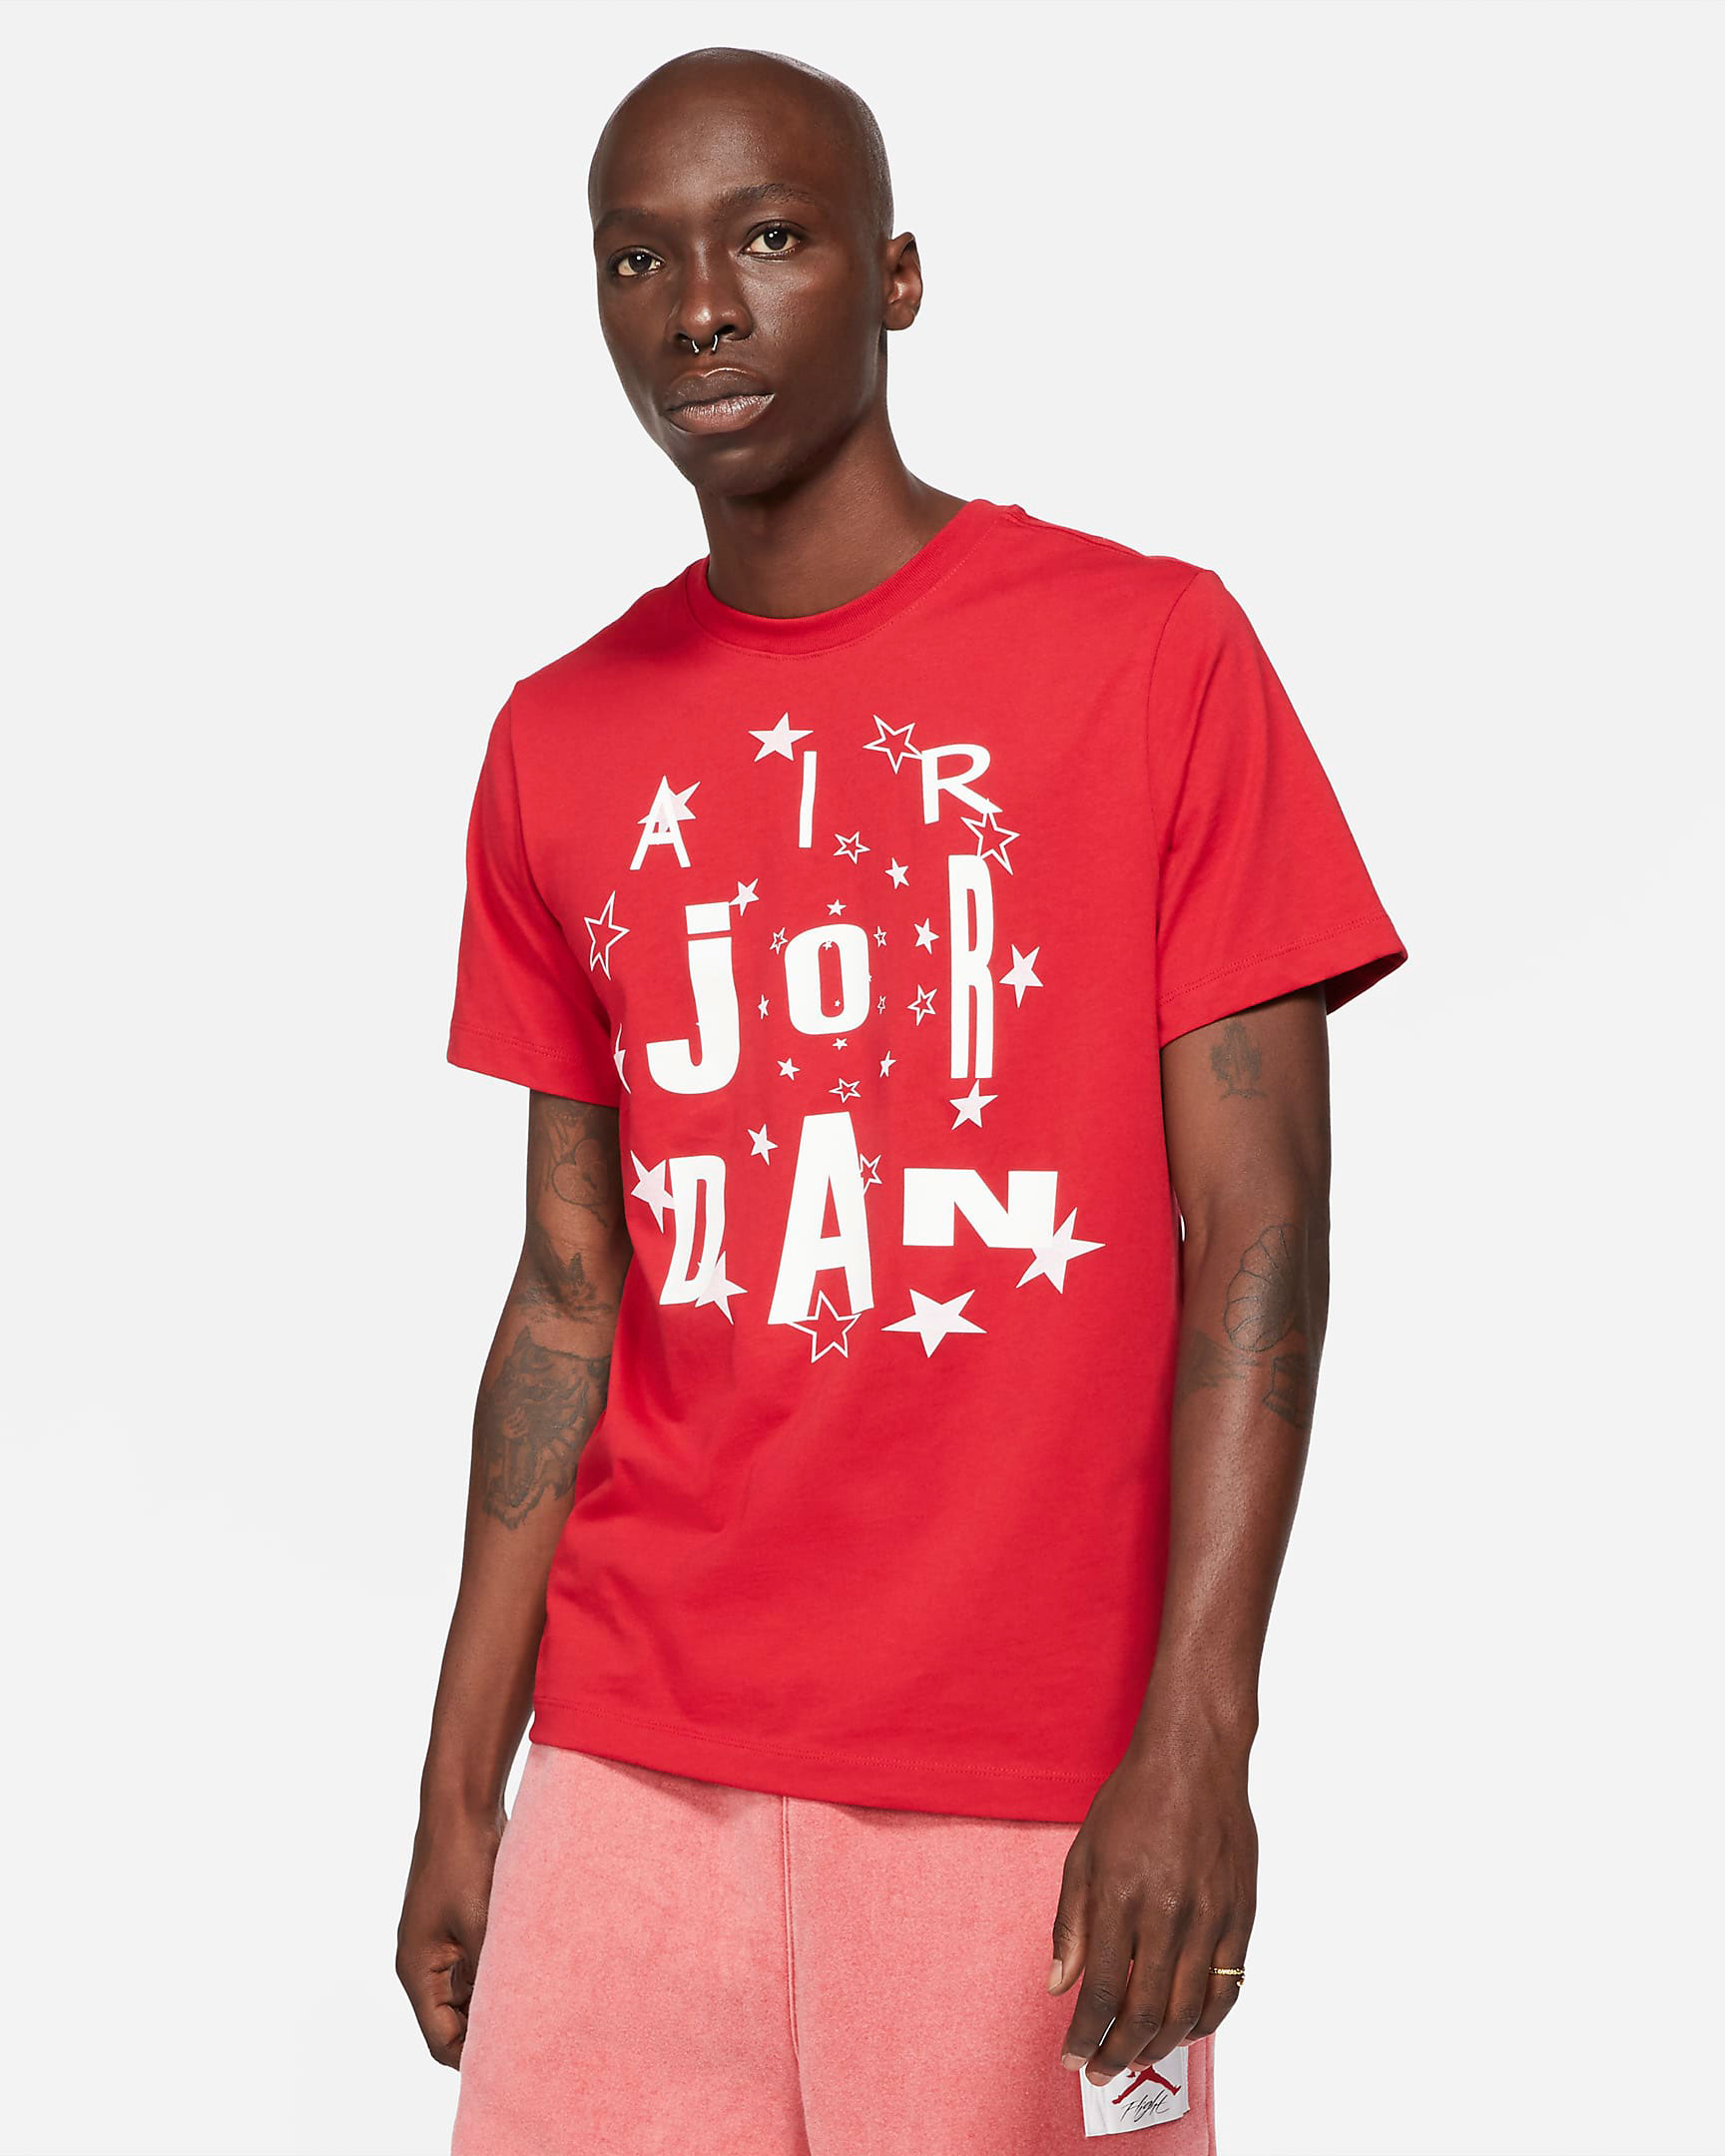 carmine-air-jordan-6-2021-shirt